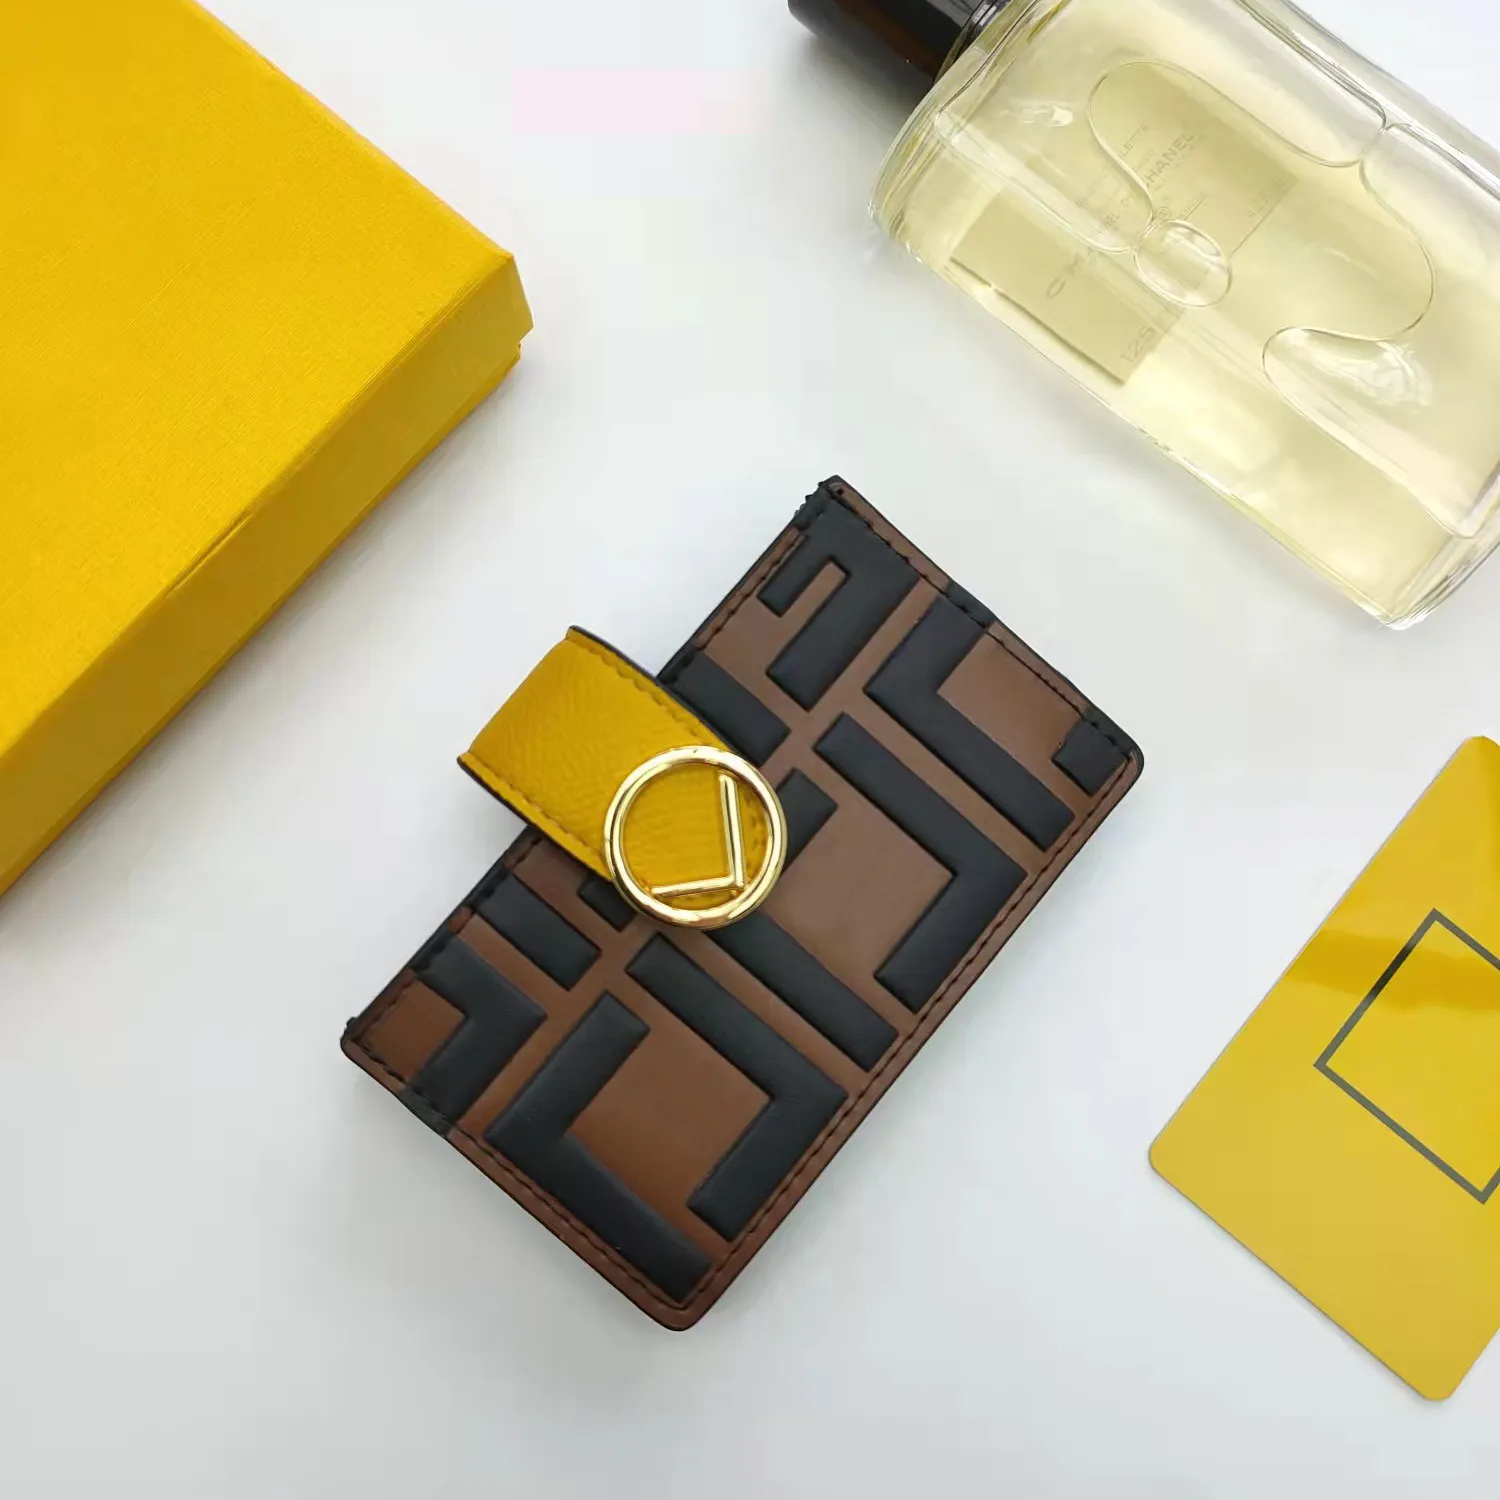 Porte-cartes Portefeuille mode milieu sandwich cartes pratiques sac 5 emplacements pour cartes avec logo étiquette interne cuir de veau noir 6 couleurs disponibles